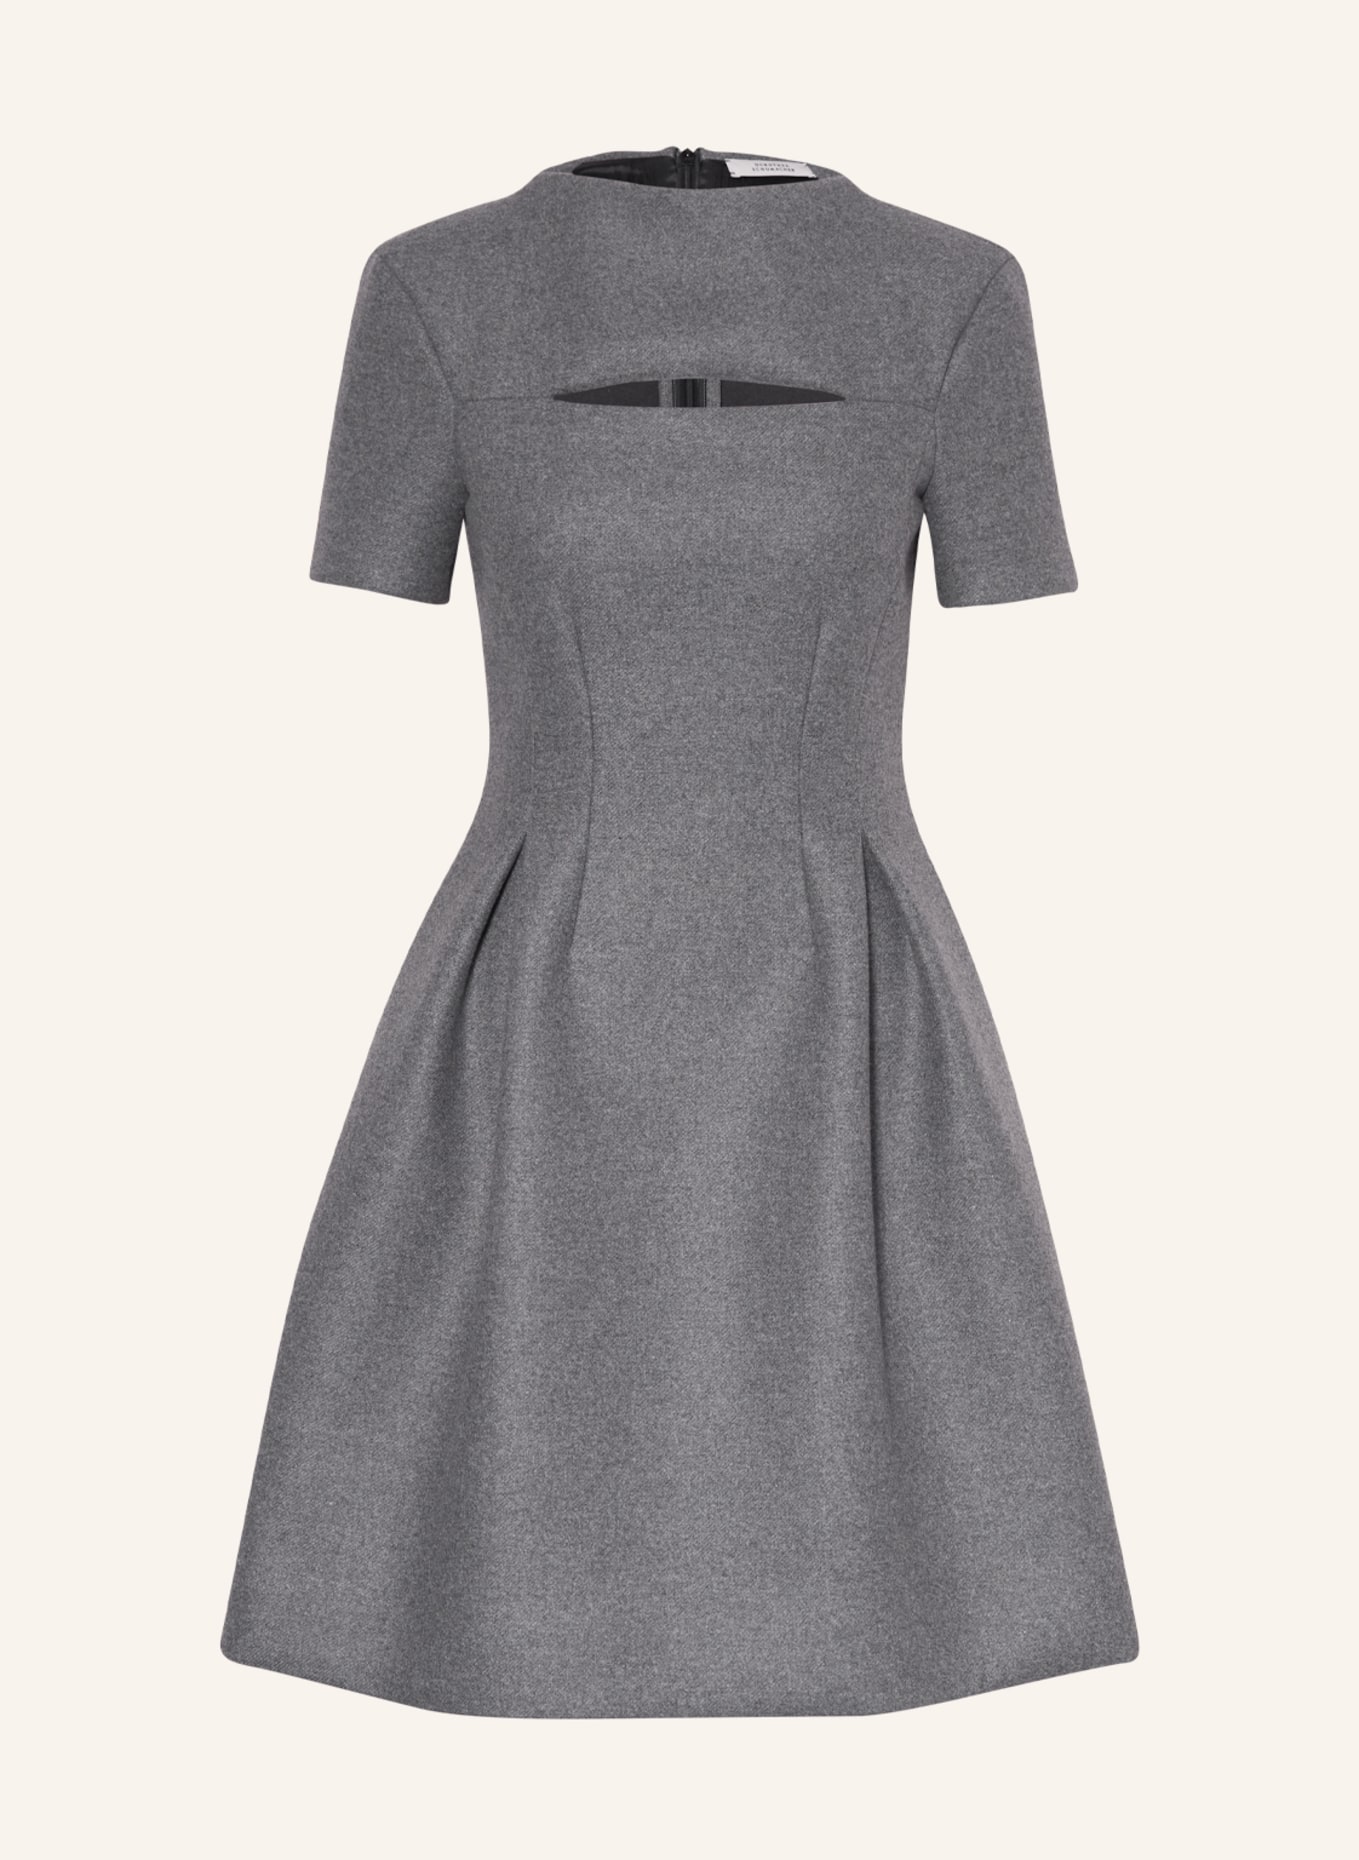 DOROTHEE SCHUMACHER Kleid mit Cut-out, Farbe: GRAU (Bild 1)